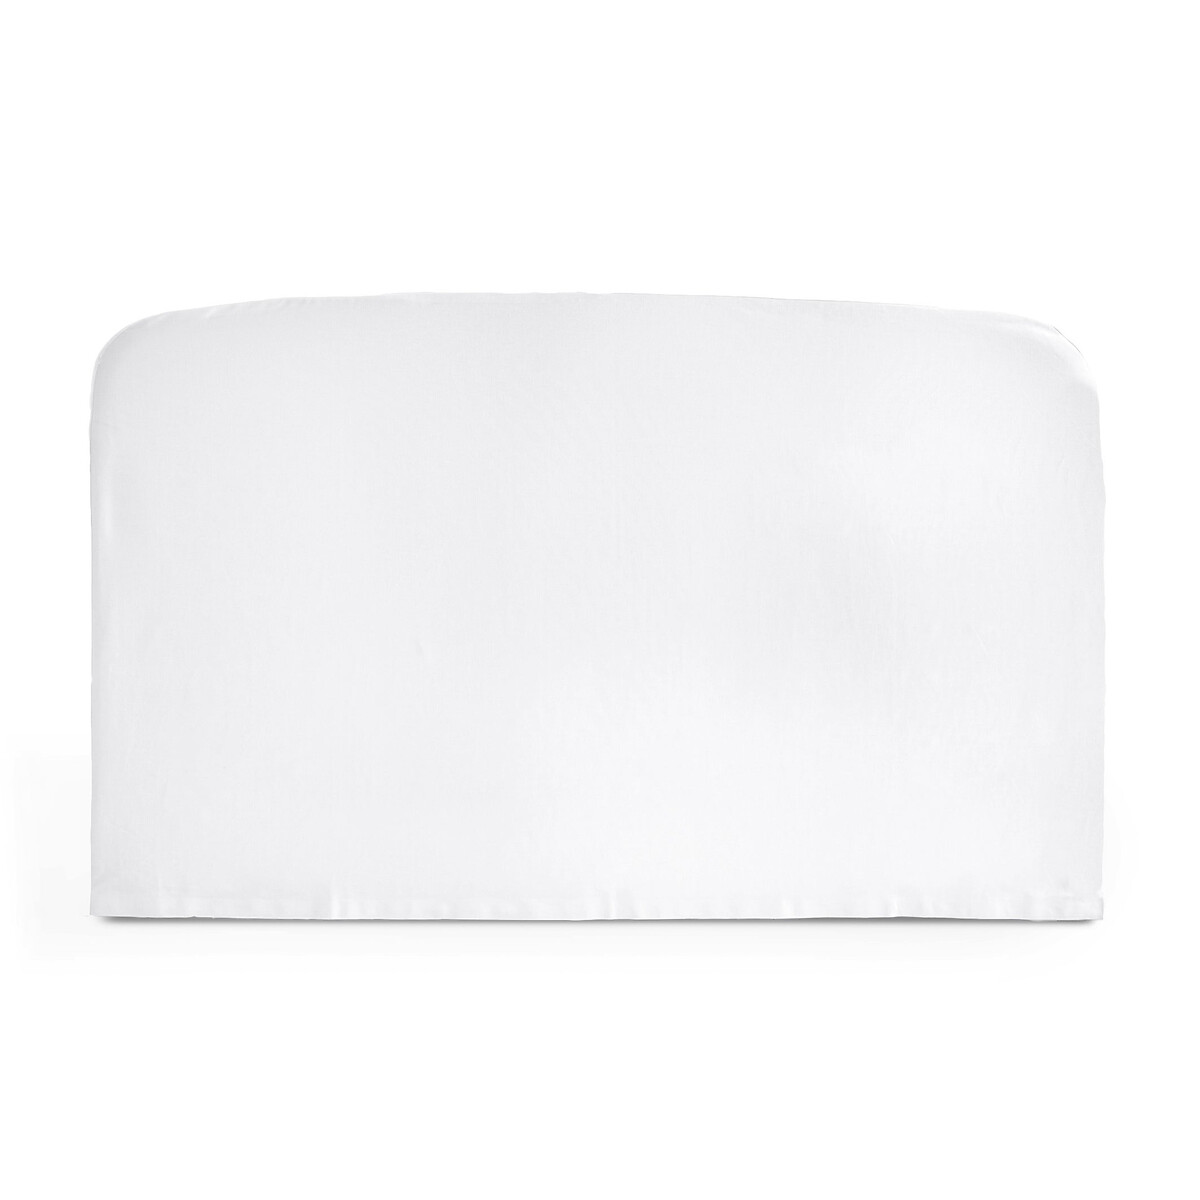 Чехол La Redoute Для изголовья кровати округлой формы из хлопка  SCENARIO 180 x 85 см белый, размер 180 x 85 см - фото 1